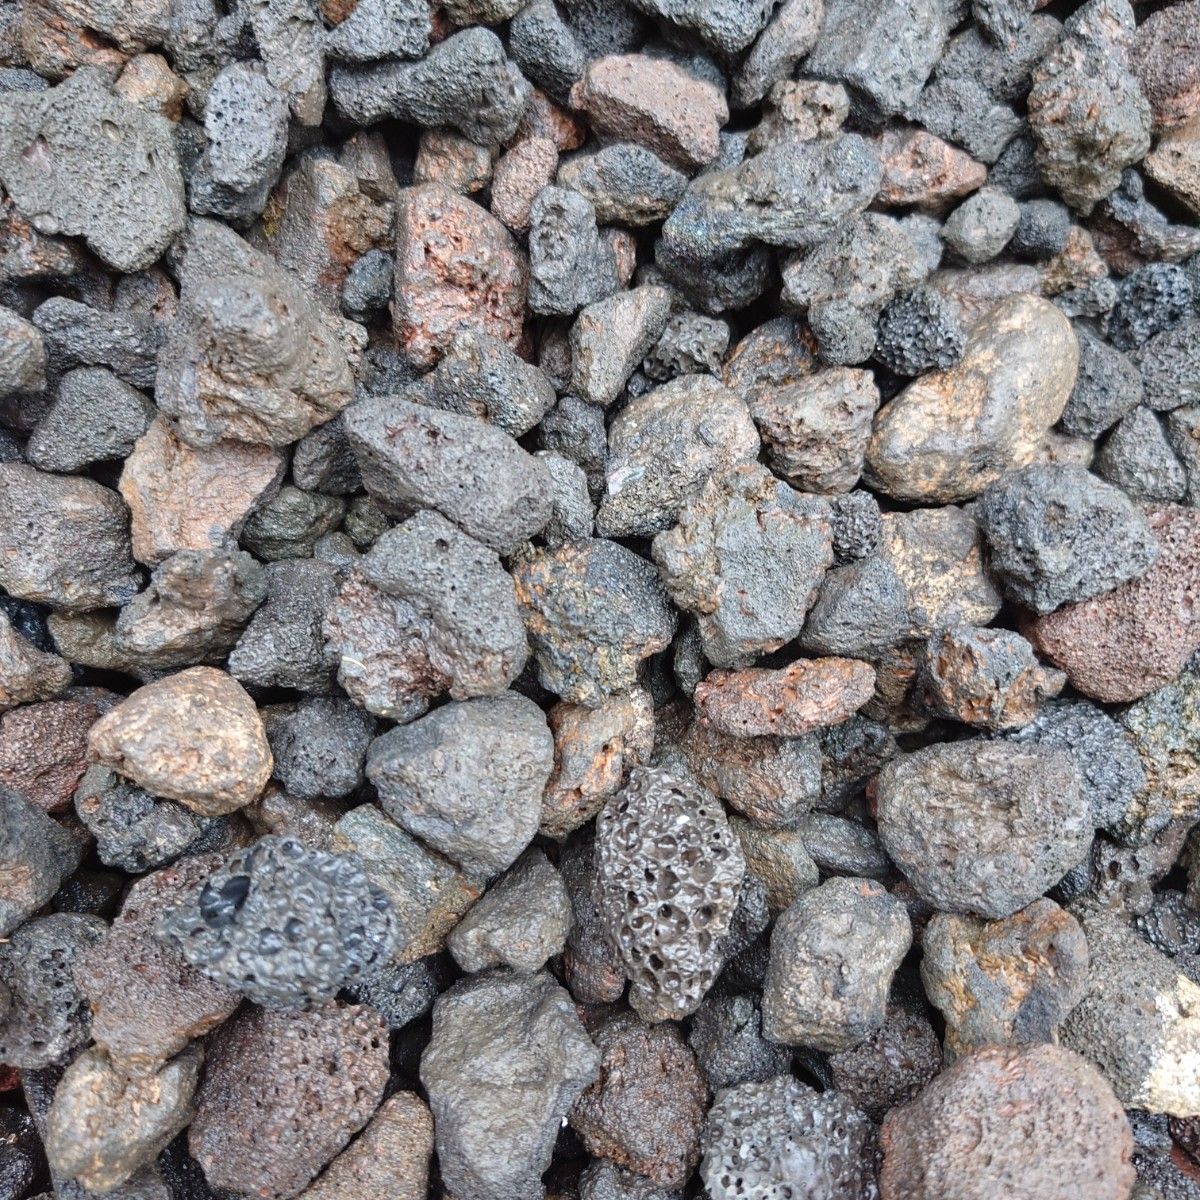 【アウトレット品】黒溶岩石 9kg (1.5から3.9cmほどの大きさ)